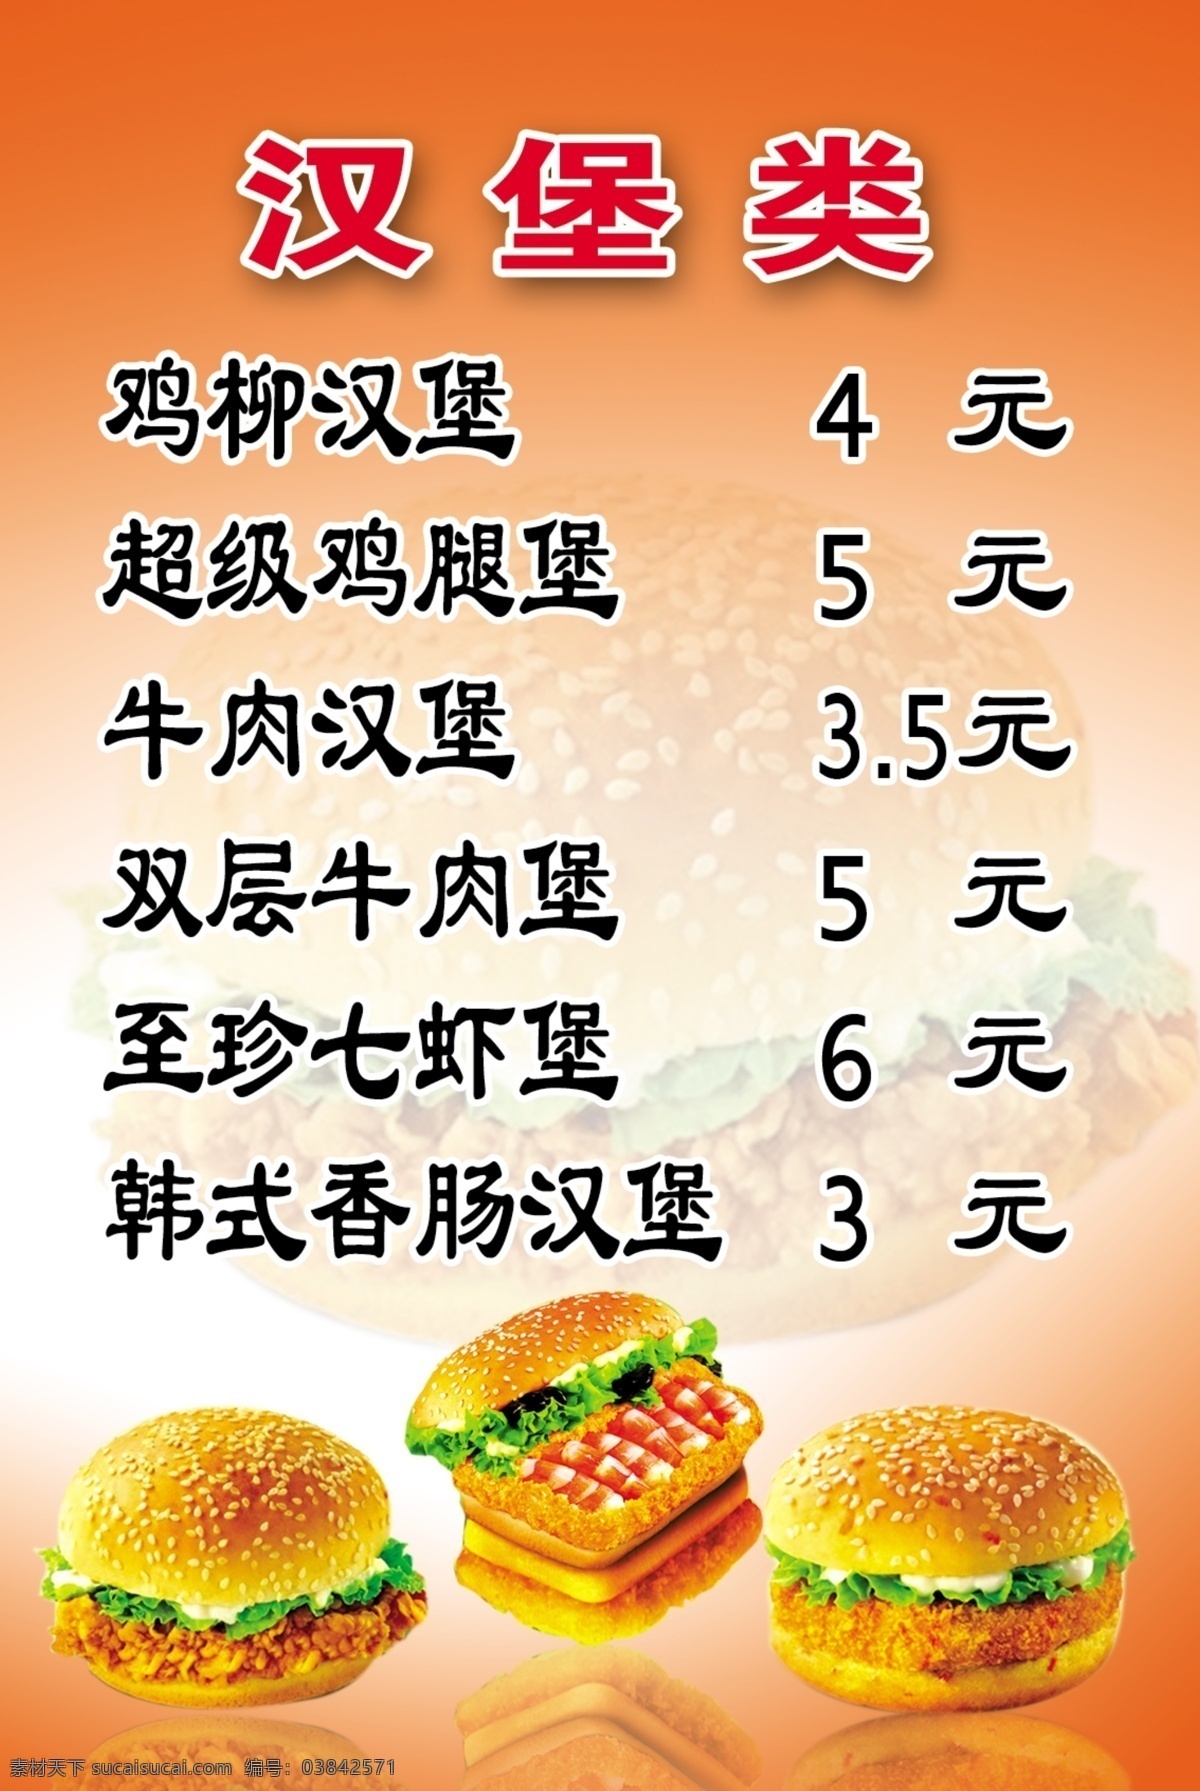 汉堡 价格表 鸡柳汉堡 牛肉汉堡 七虾堡 原创设计 其他原创设计